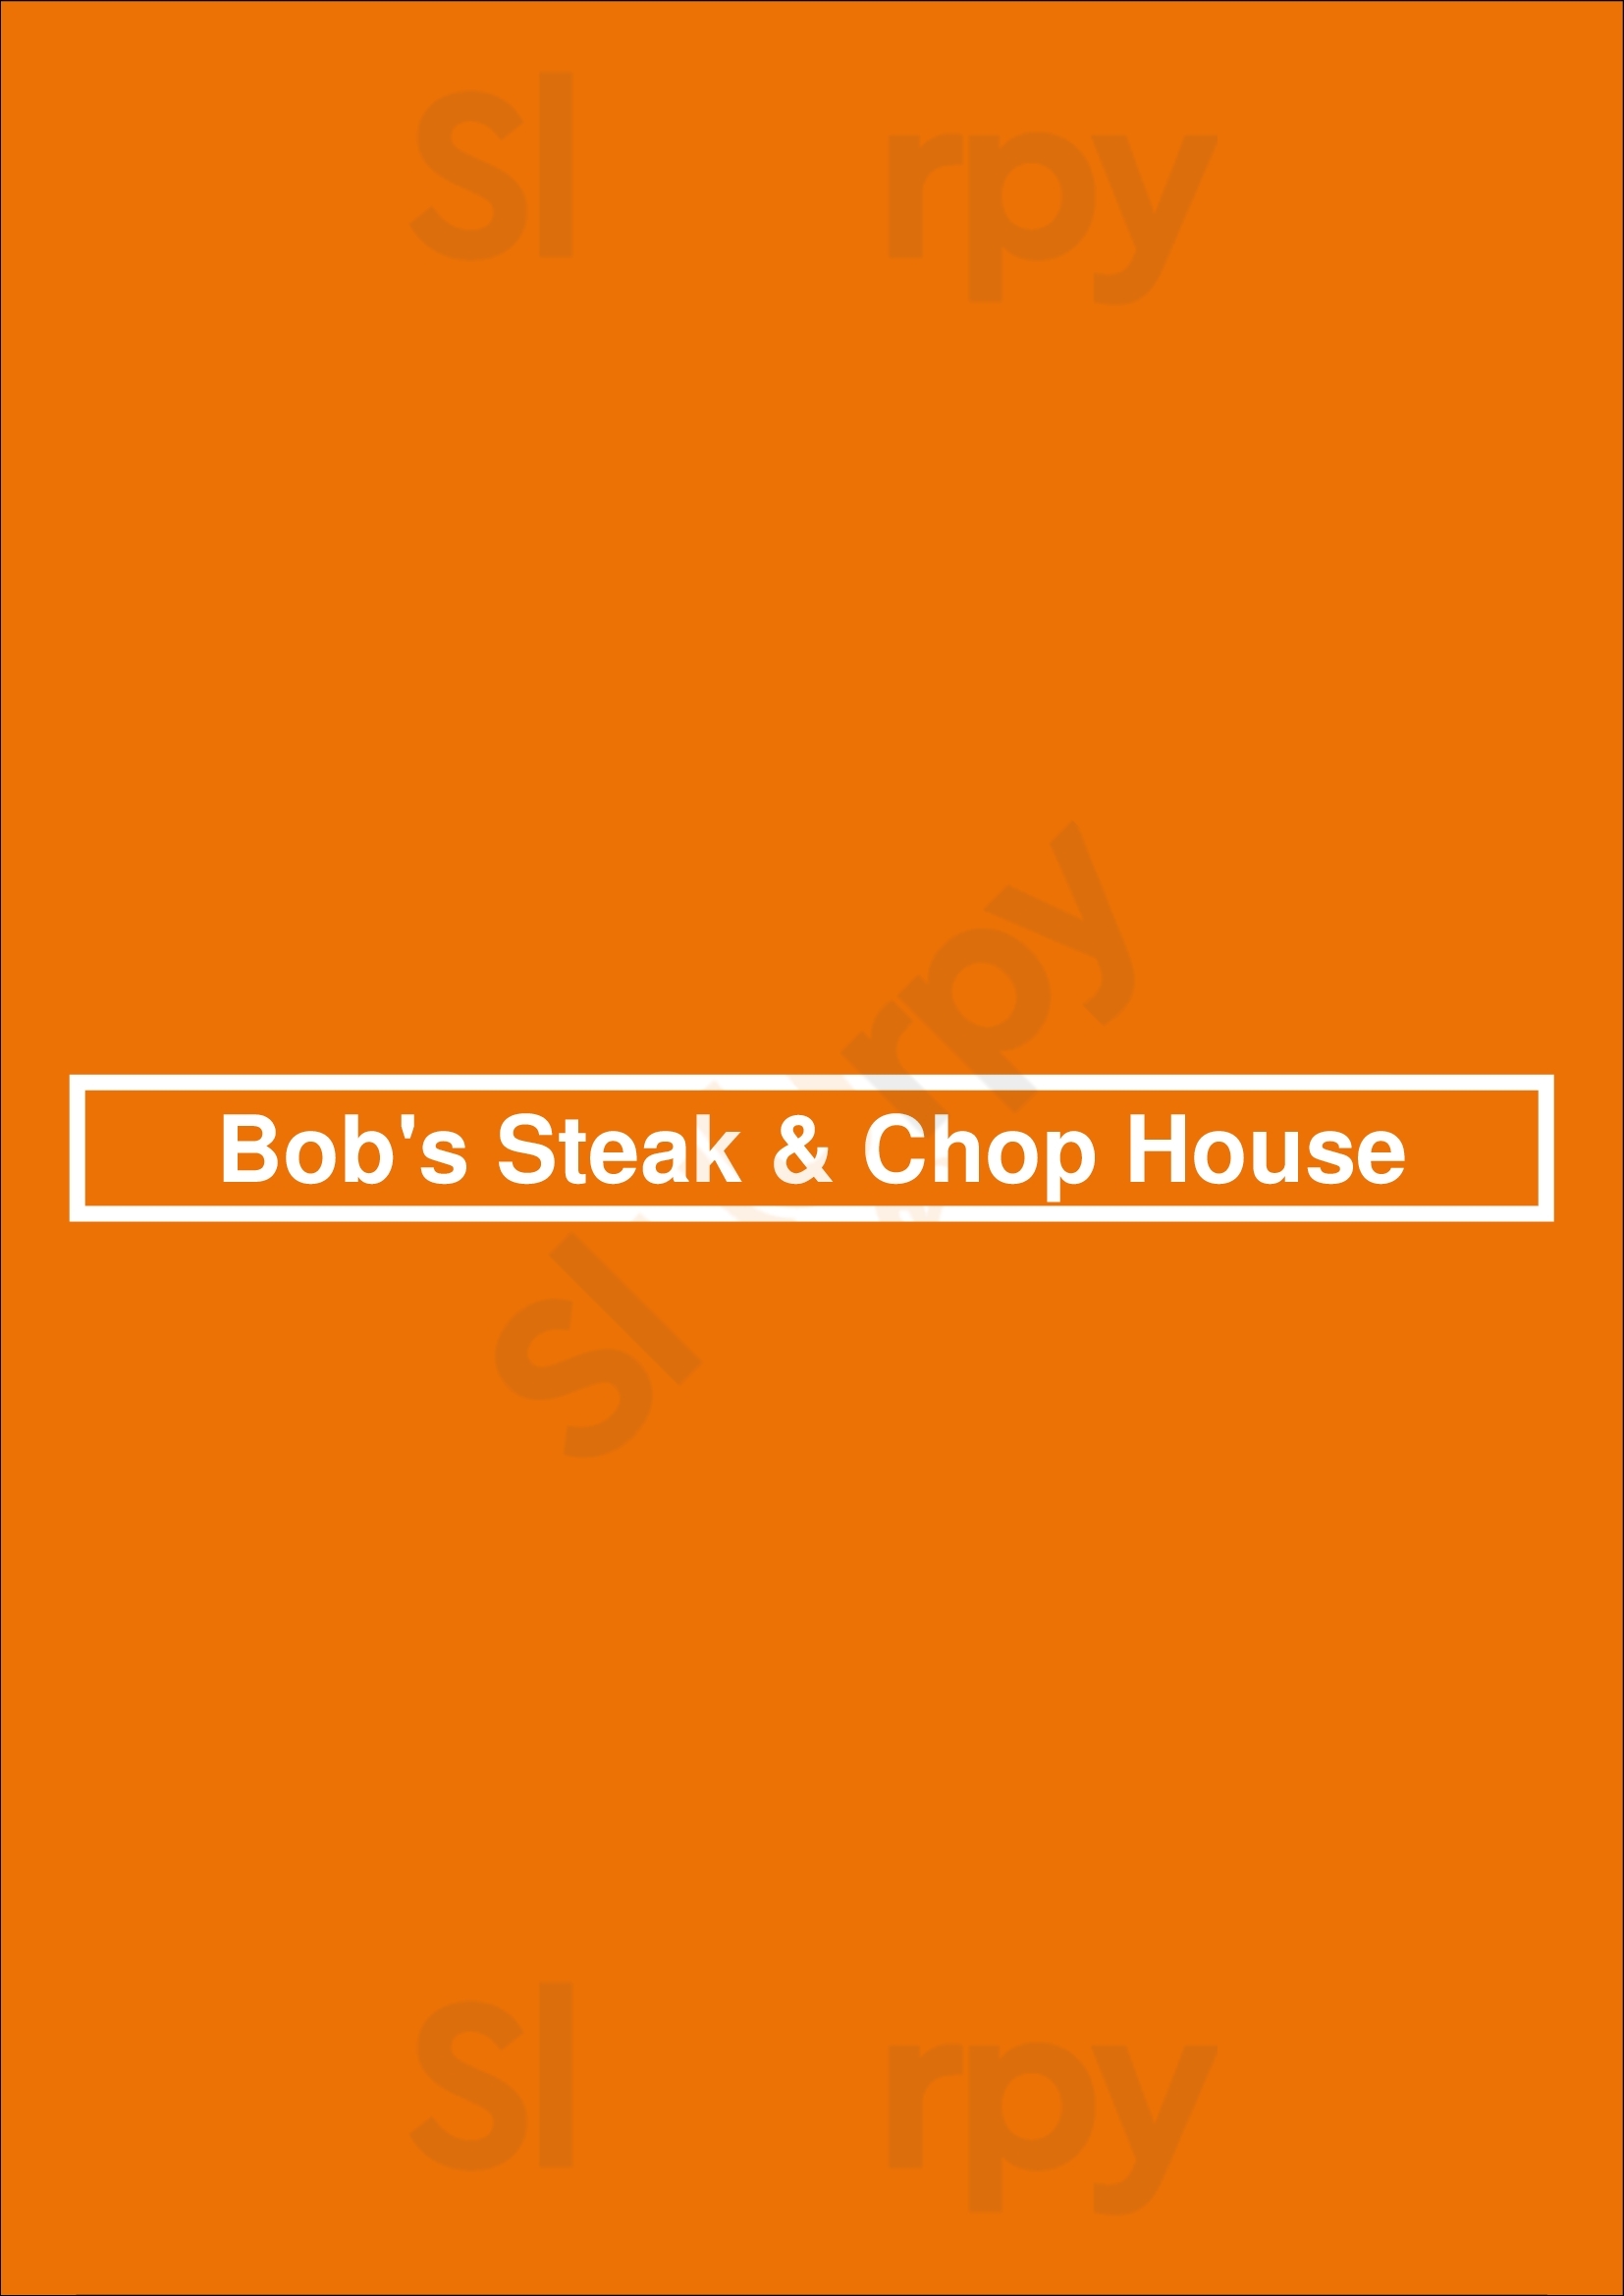 Bob's Steak & Chop House - Austin Downtown Austin Menu - 1